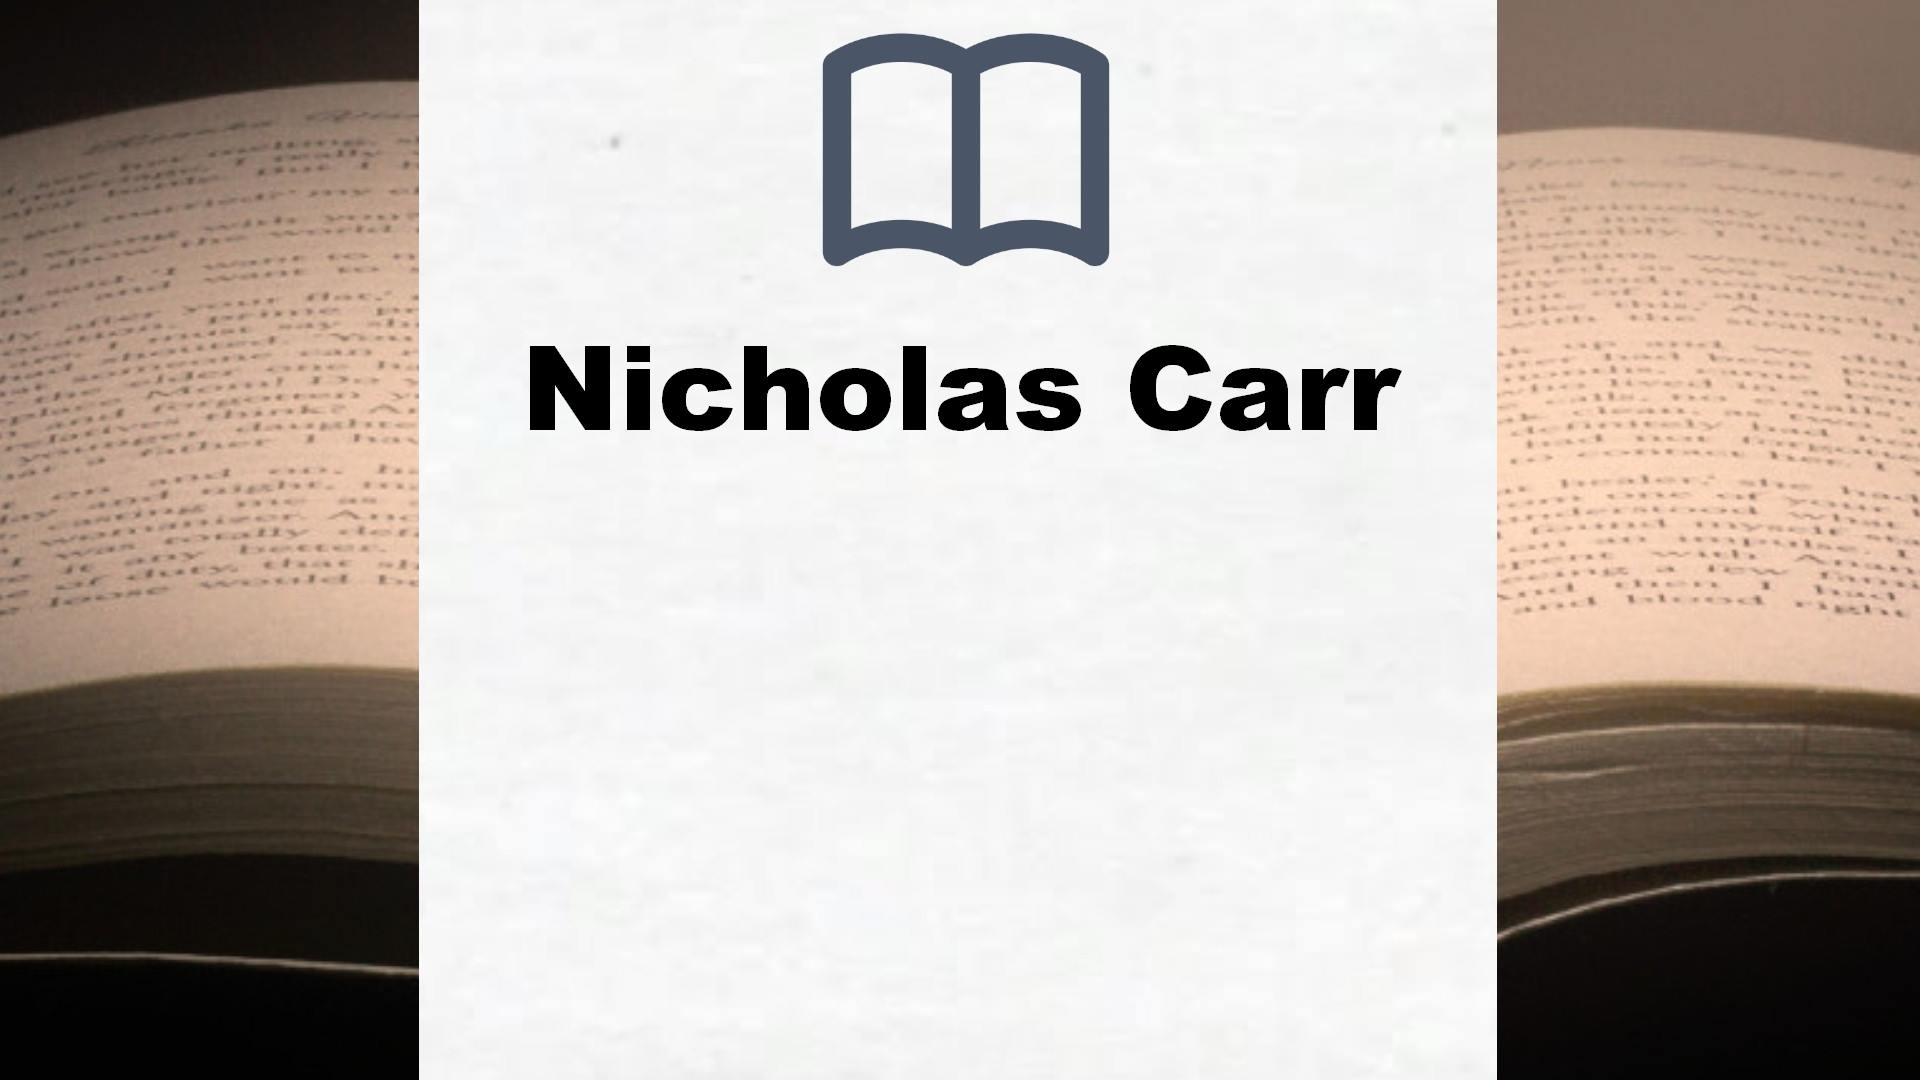 Libros Nicholas Carr